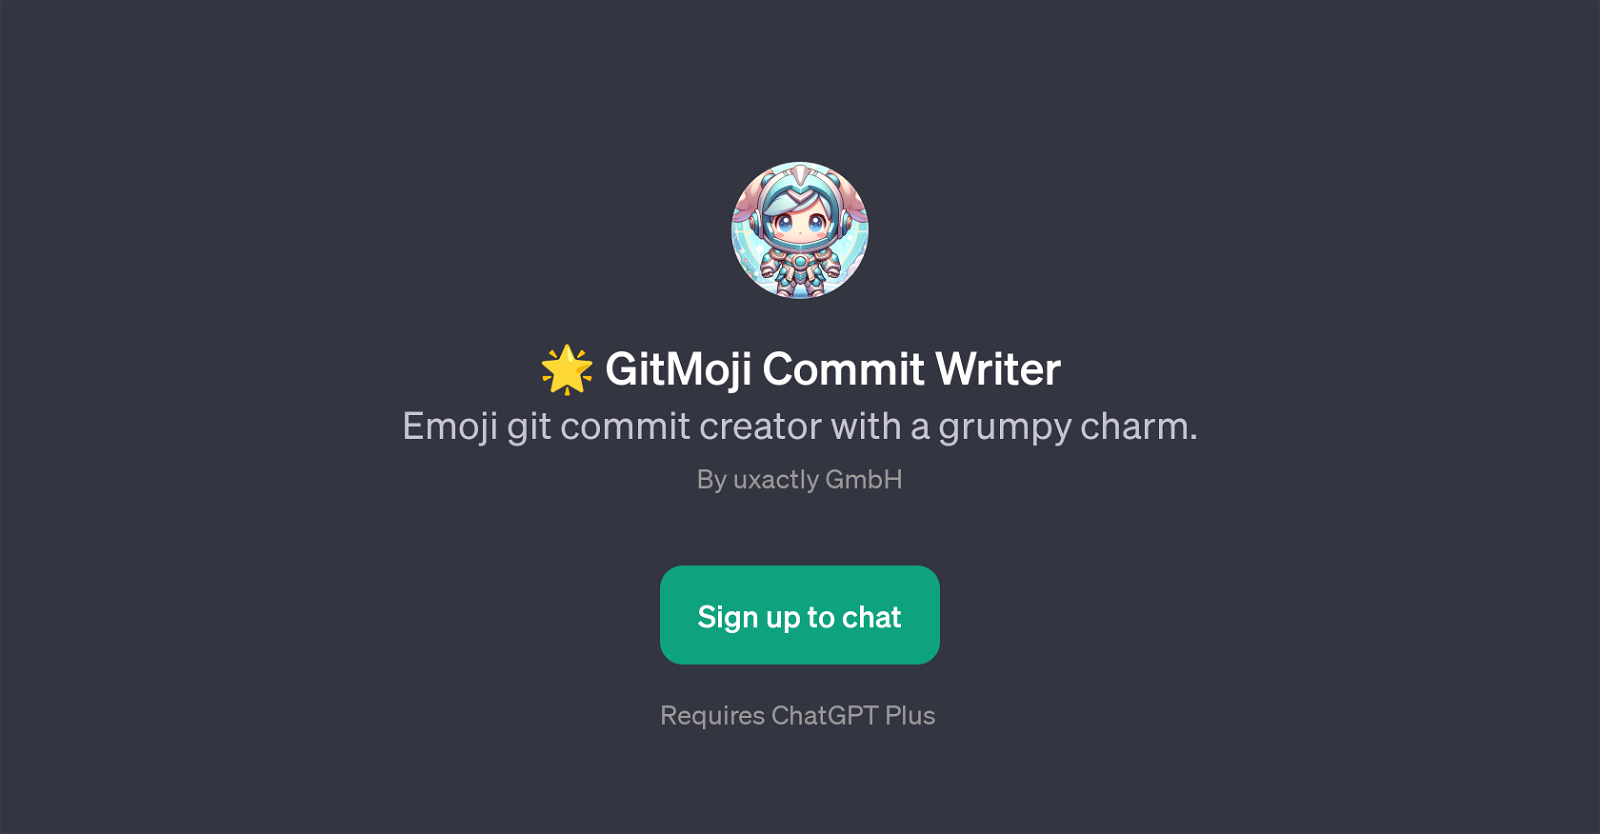 GitMoji Commit Writer website